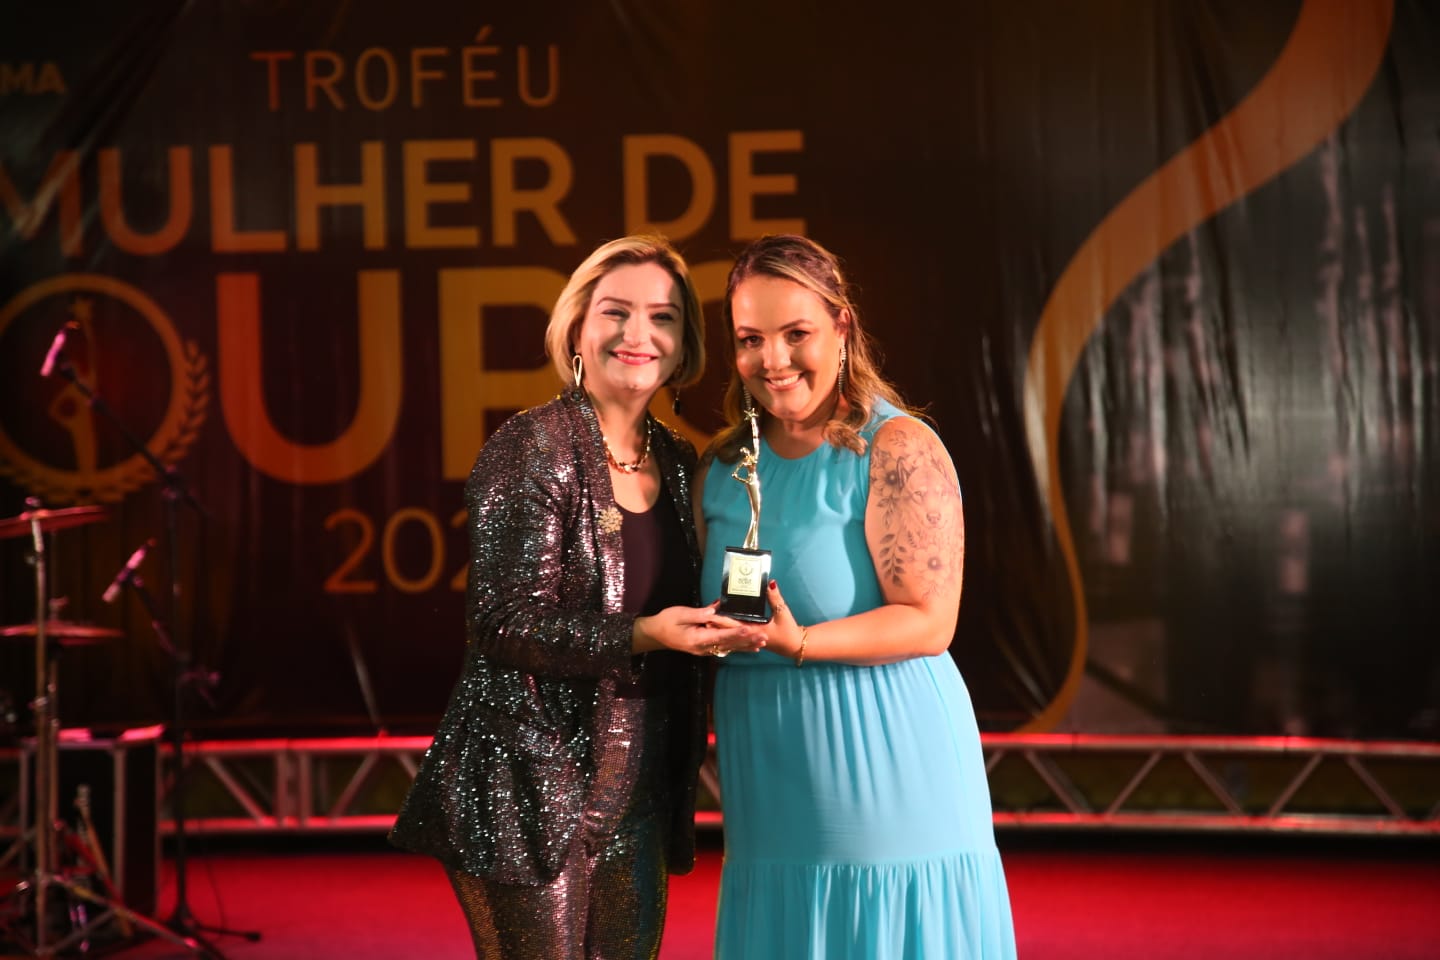 Troféu Mulher de Ouro 2022 destaca a força e a sensibilidade feminina